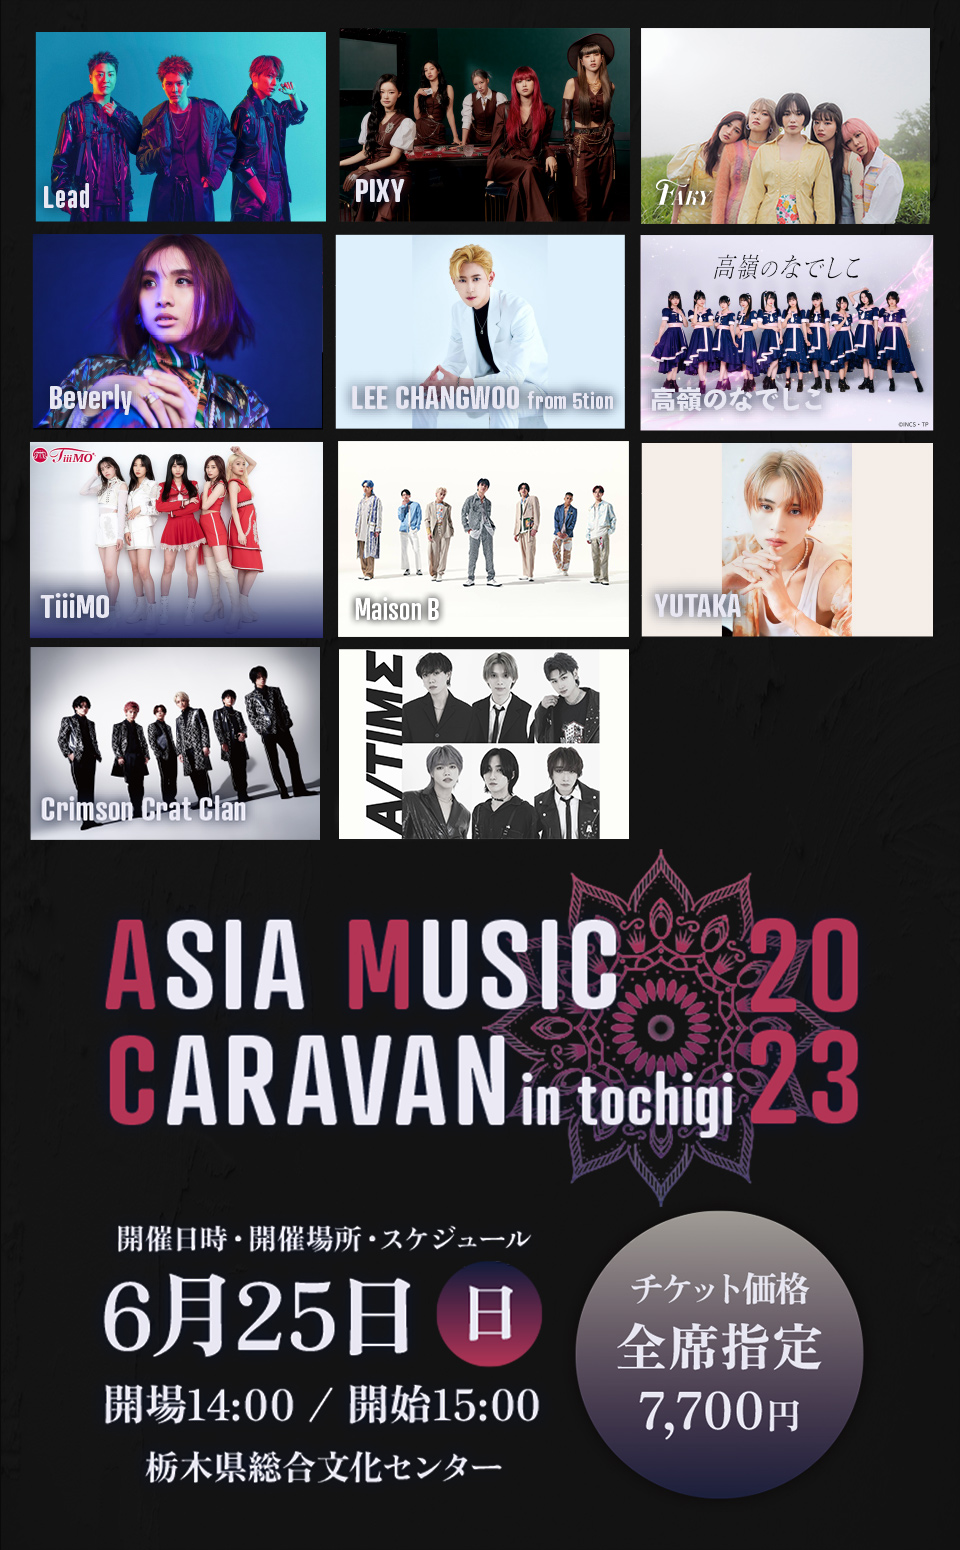 Asia Music Caravan